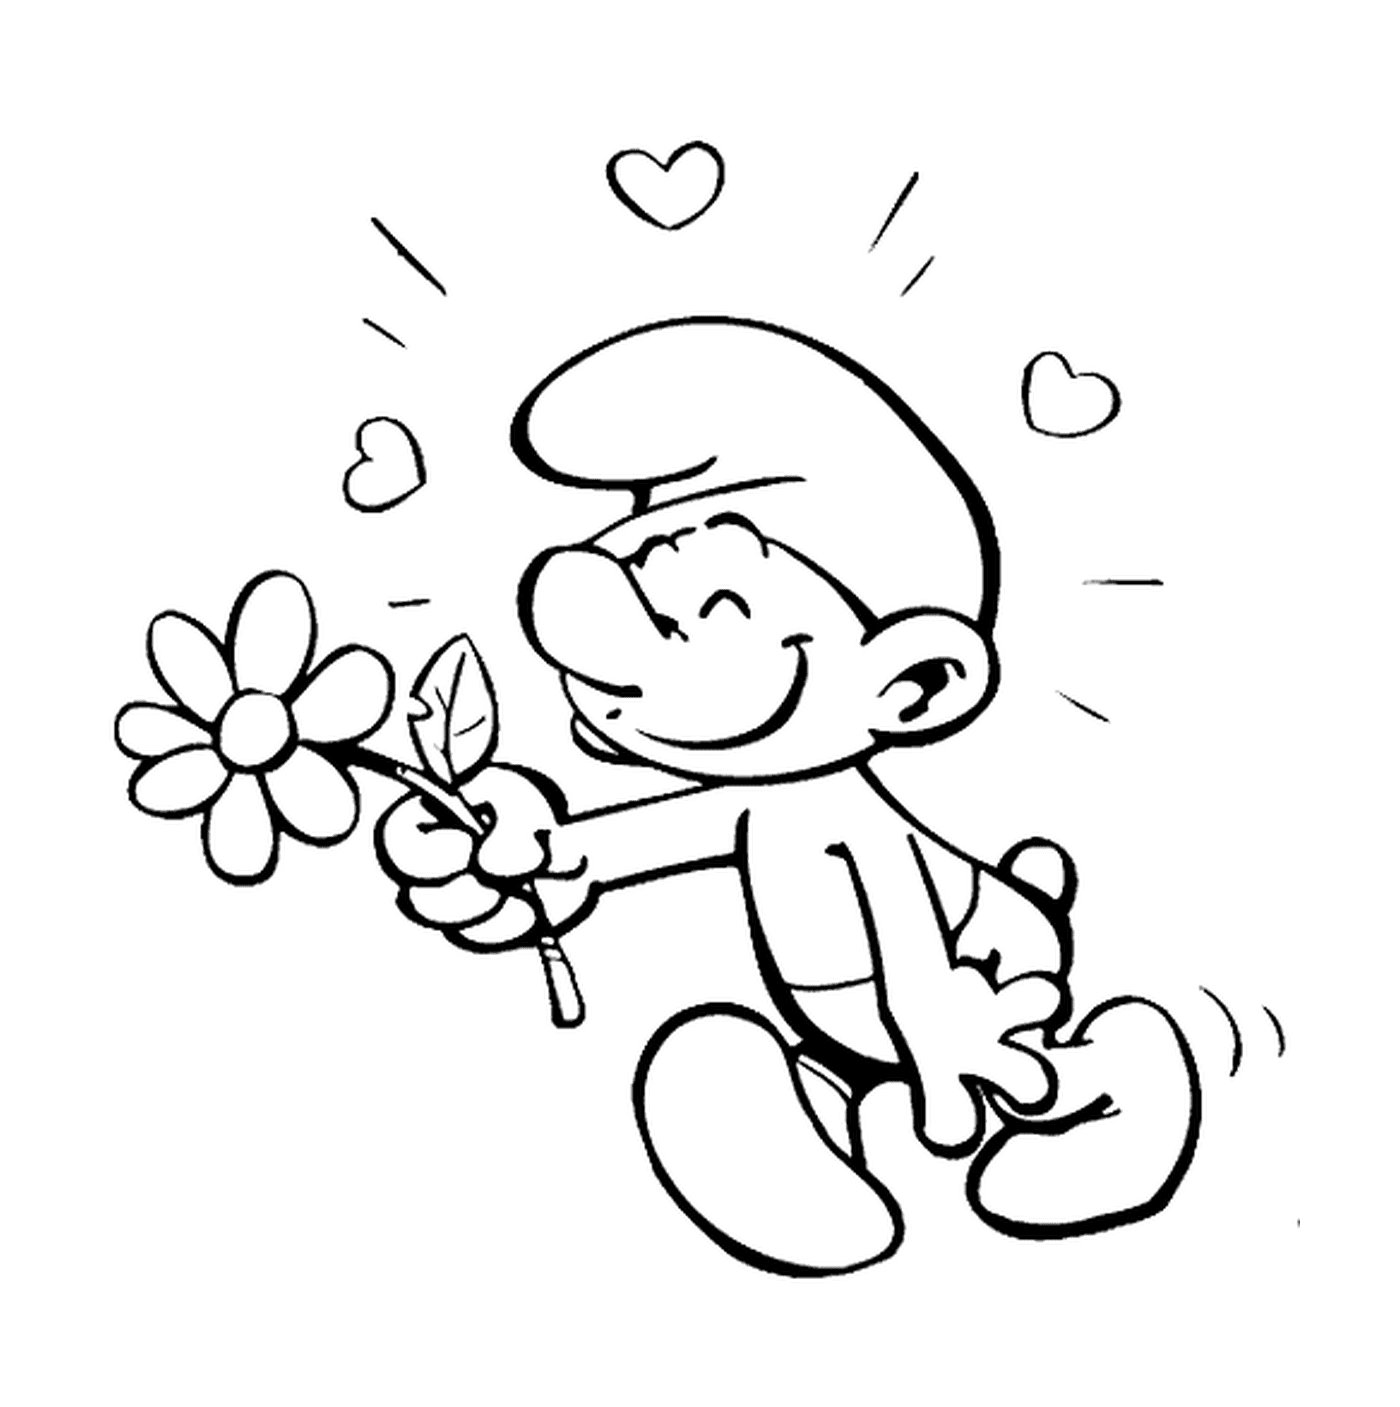  Un amante sostiene una flor 